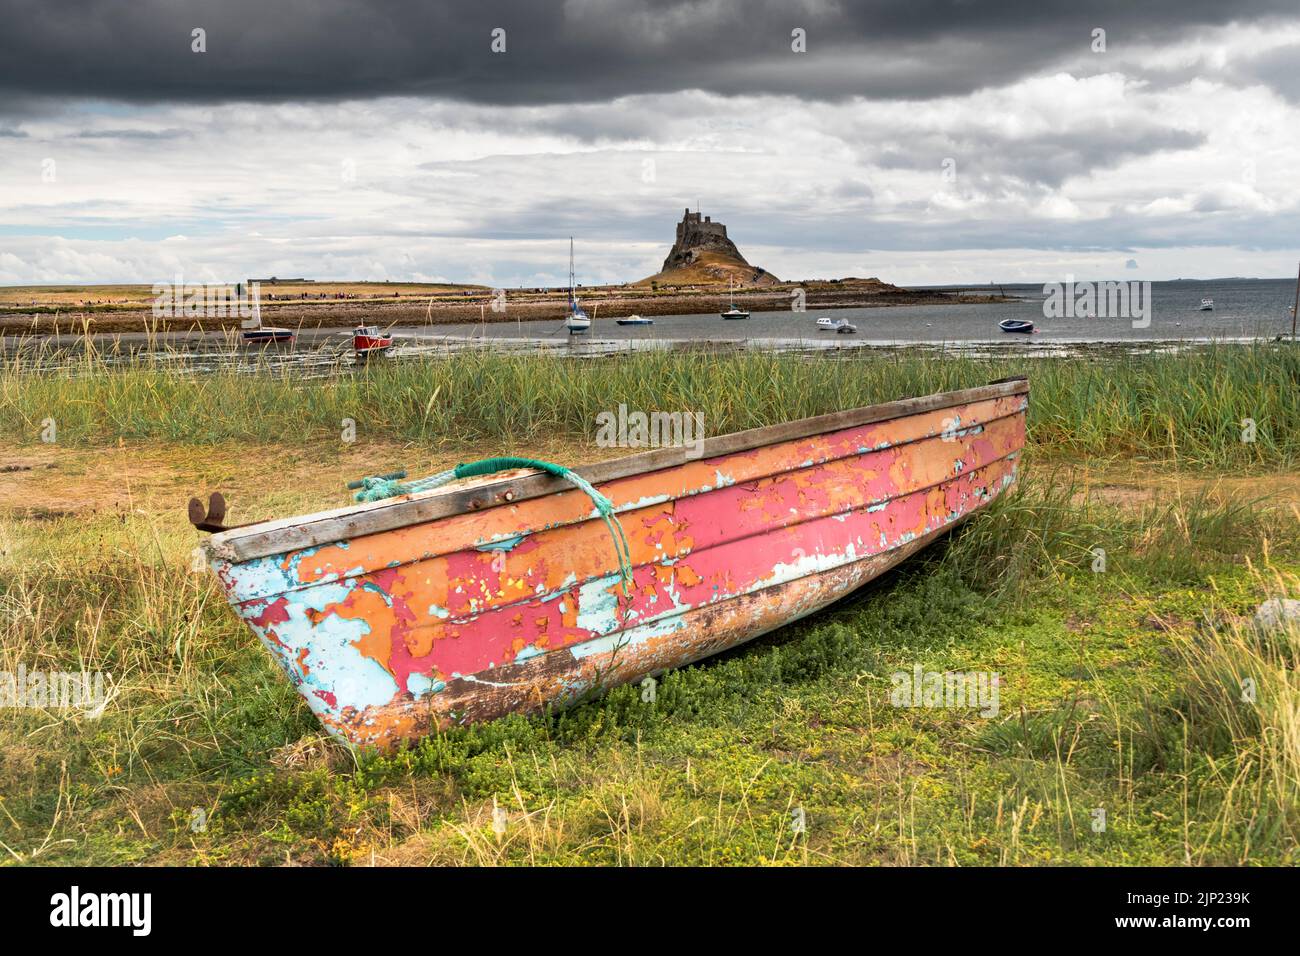 Vieux bateau de pêche avec le château de Lindisfarne en arrière-plan, Lindisfarne (île Sainte), Northumberland, Angleterre, Royaume-Uni Banque D'Images